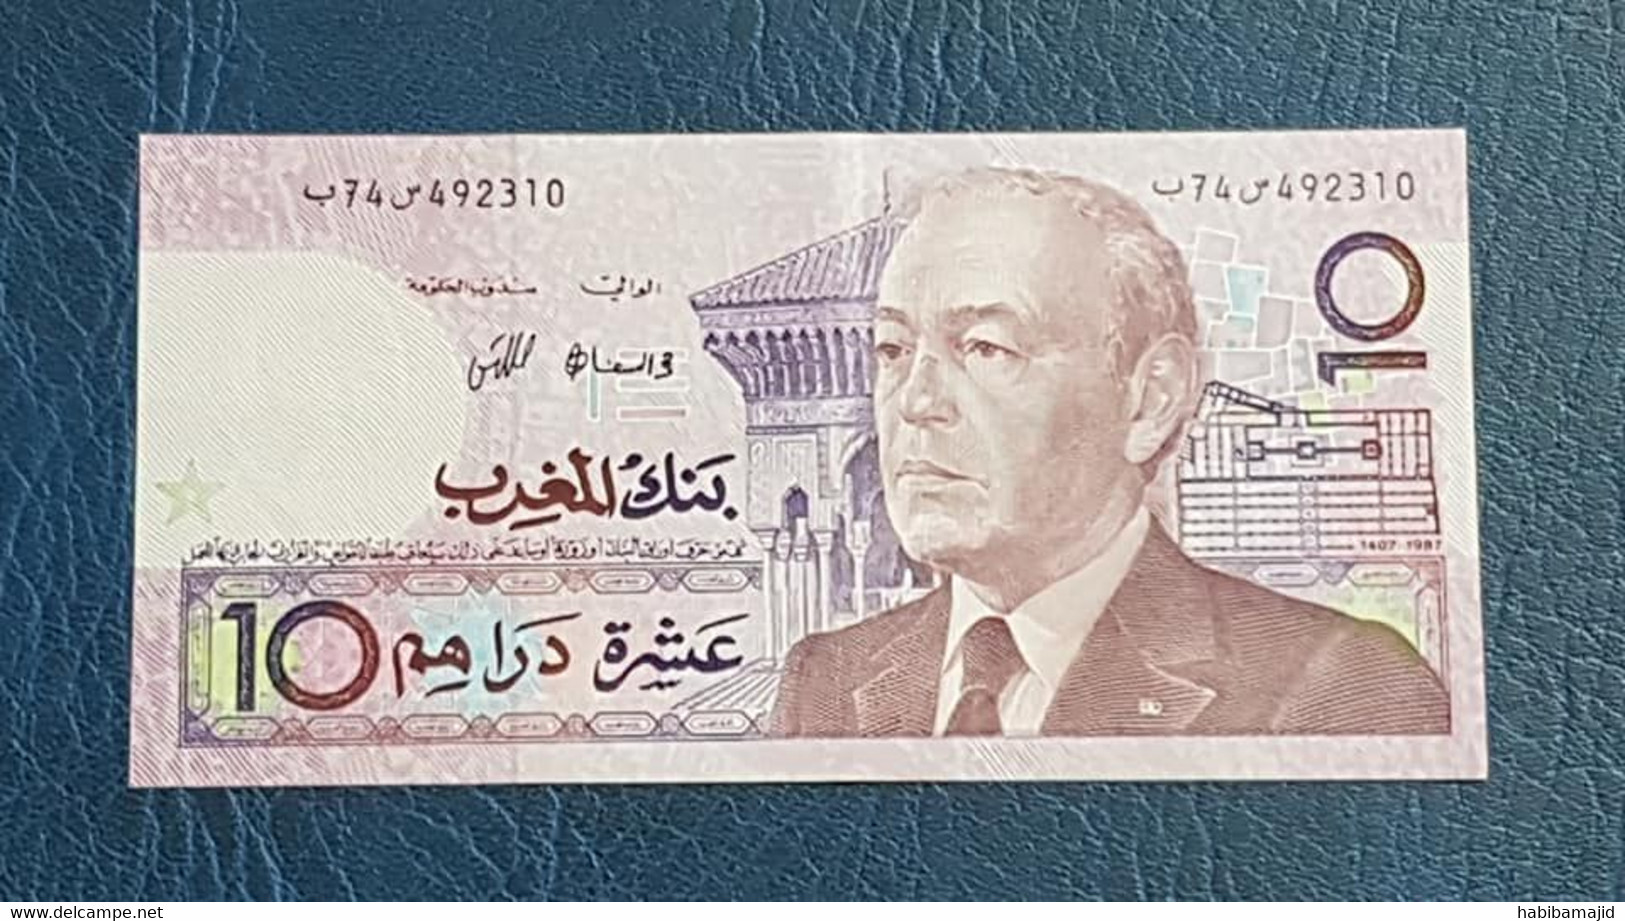 MAROC : Lot 4 - 4 Billets de 10 dirhams (Hassan II) 1987 "UNC" - Numéros de Série Consécutifs